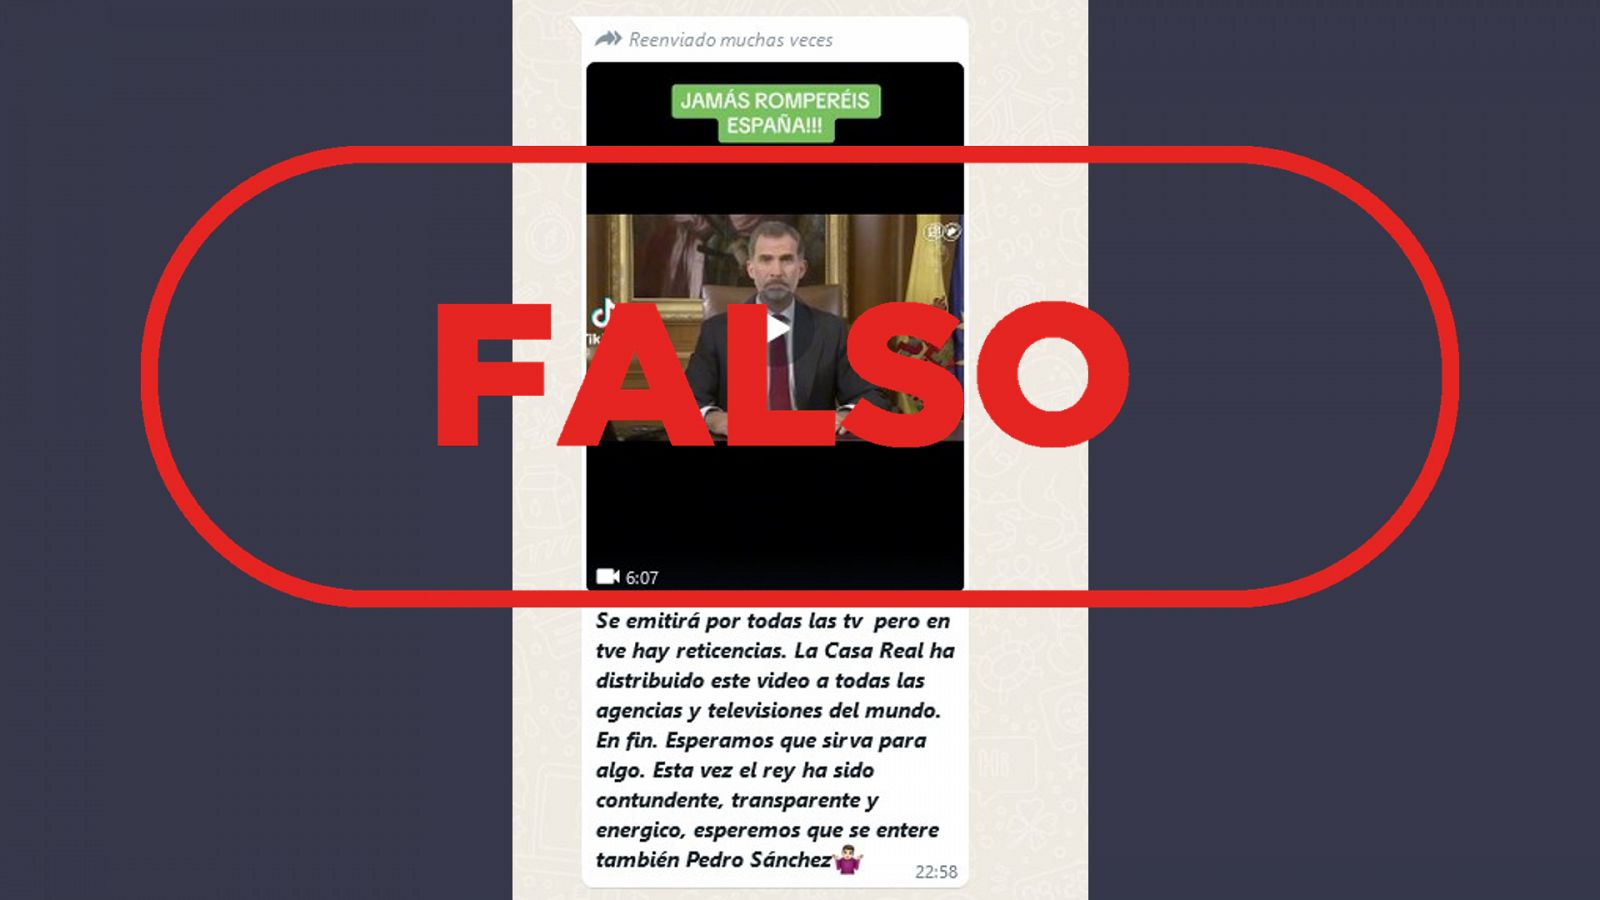 Mensaje que circula por WhatsApp difundiendo la falsa idea de que el vídeo de la declaración institucional del rey Felipe VI sobre Cataluña es actual con el sello: Falso